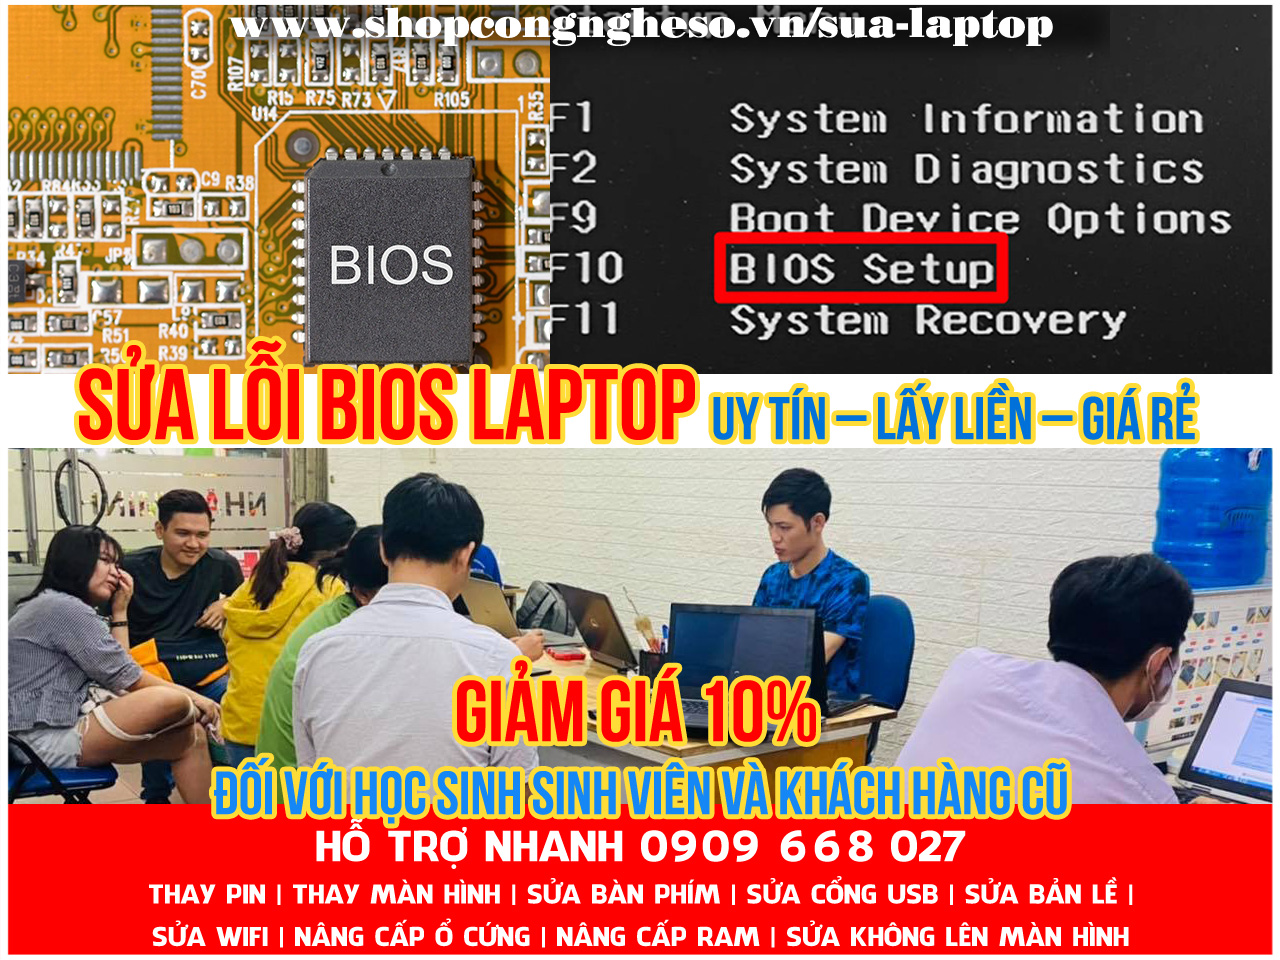 Sửa lỗi Bios laptop